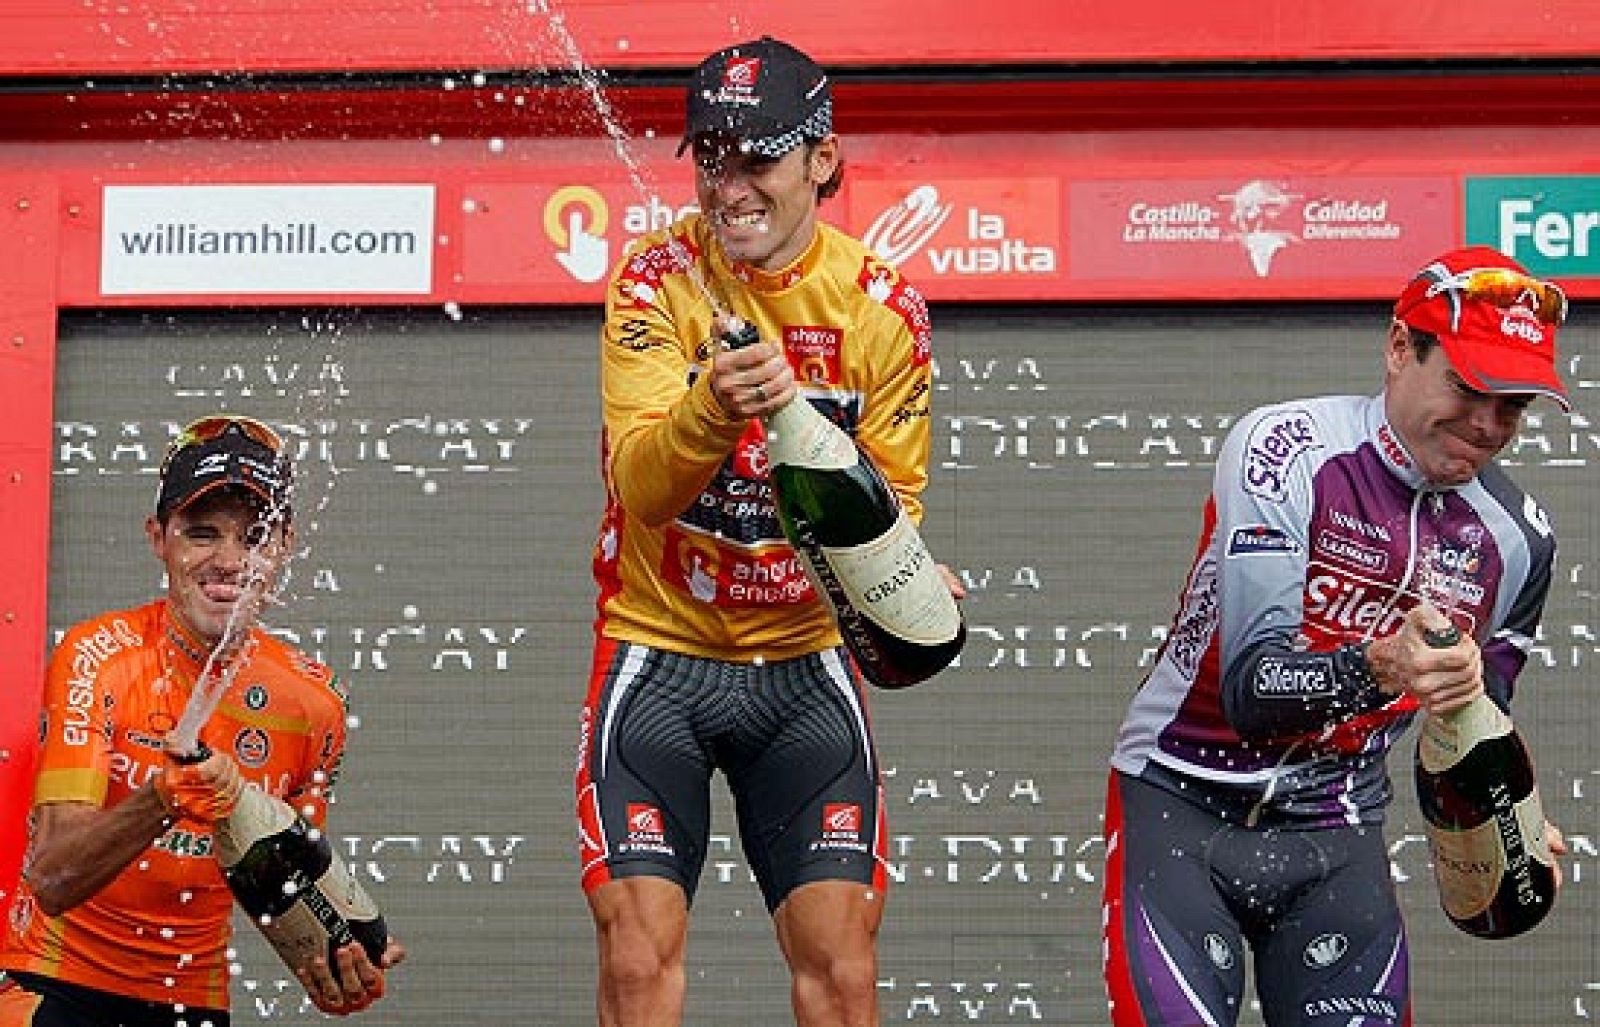 Se acaba una 64ª edición de la Vuelta a España que comenzó en Holanda y que ha encumbrado a Alejandro Valverde como el gran corredor que es.